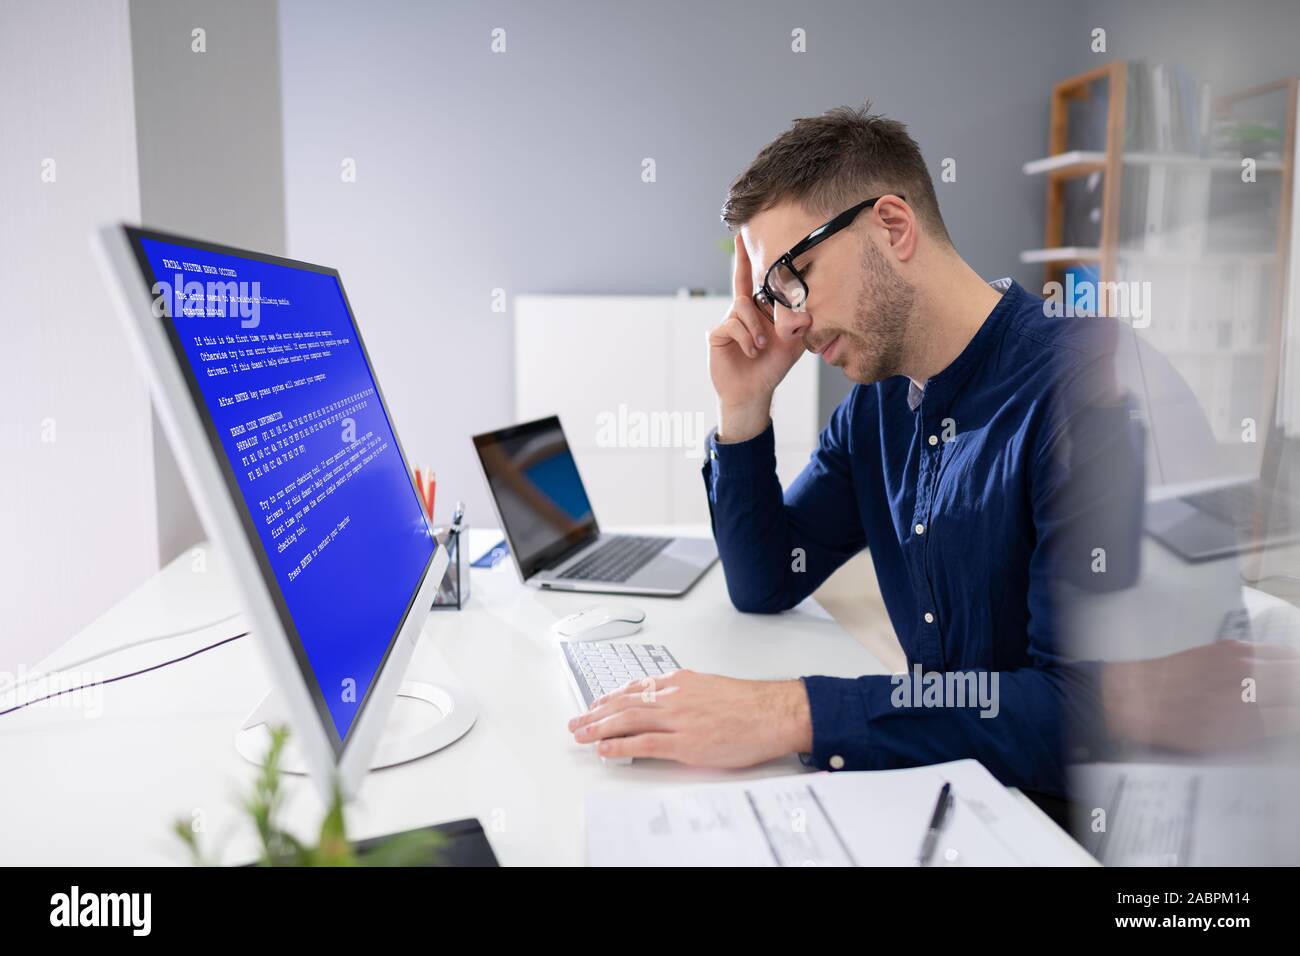 Preocupa al hombre en Ordenador con pantalla de fallo del sistema en el lugar de trabajo Foto de stock